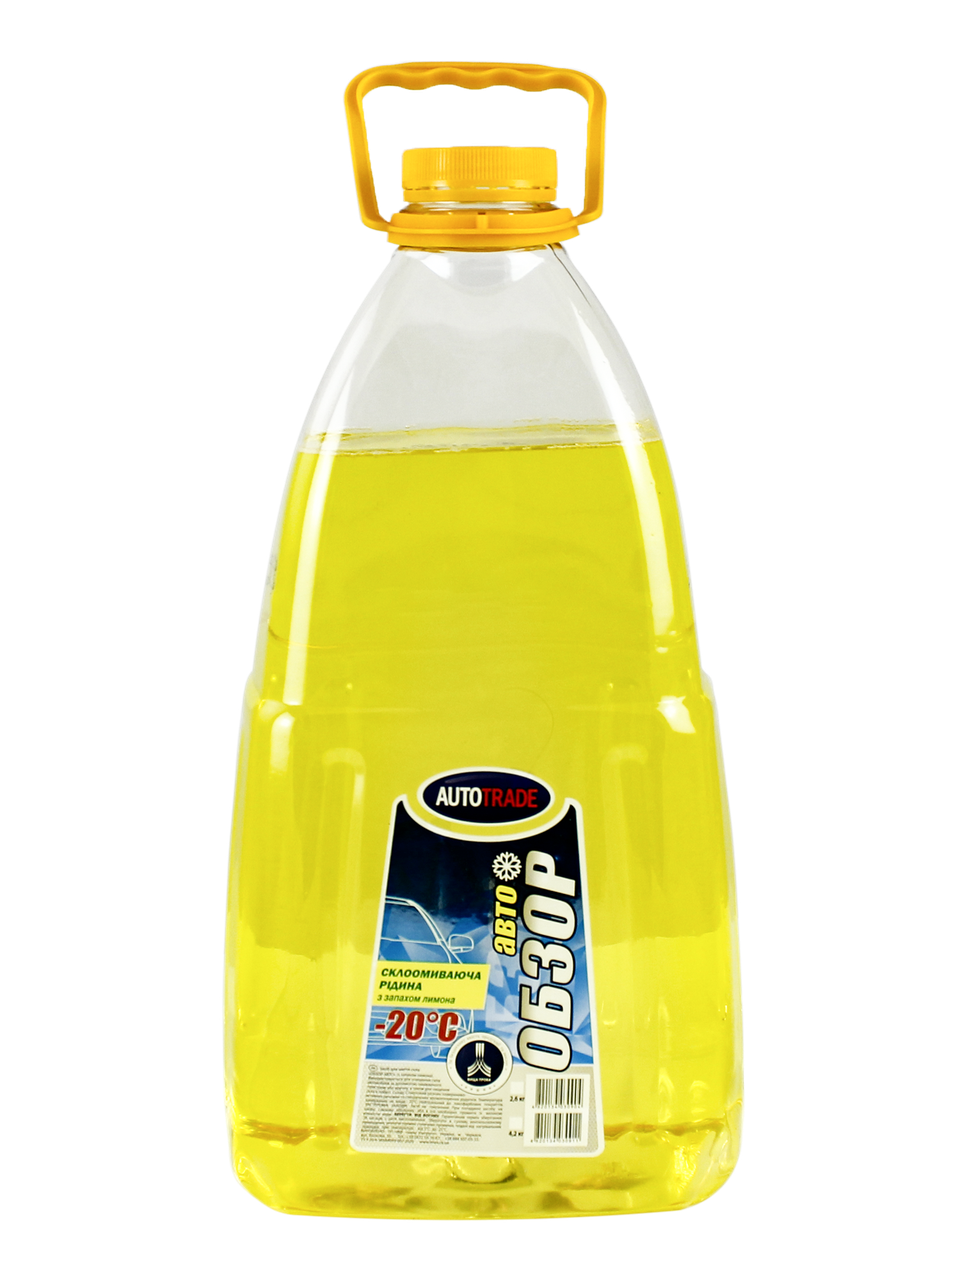 Омивач зимовий Autotrade -20 °C "Лимон" 4,2 кг, незамерзайчик, рідина для омивання скла авто Імпульс Авто Арт.130600